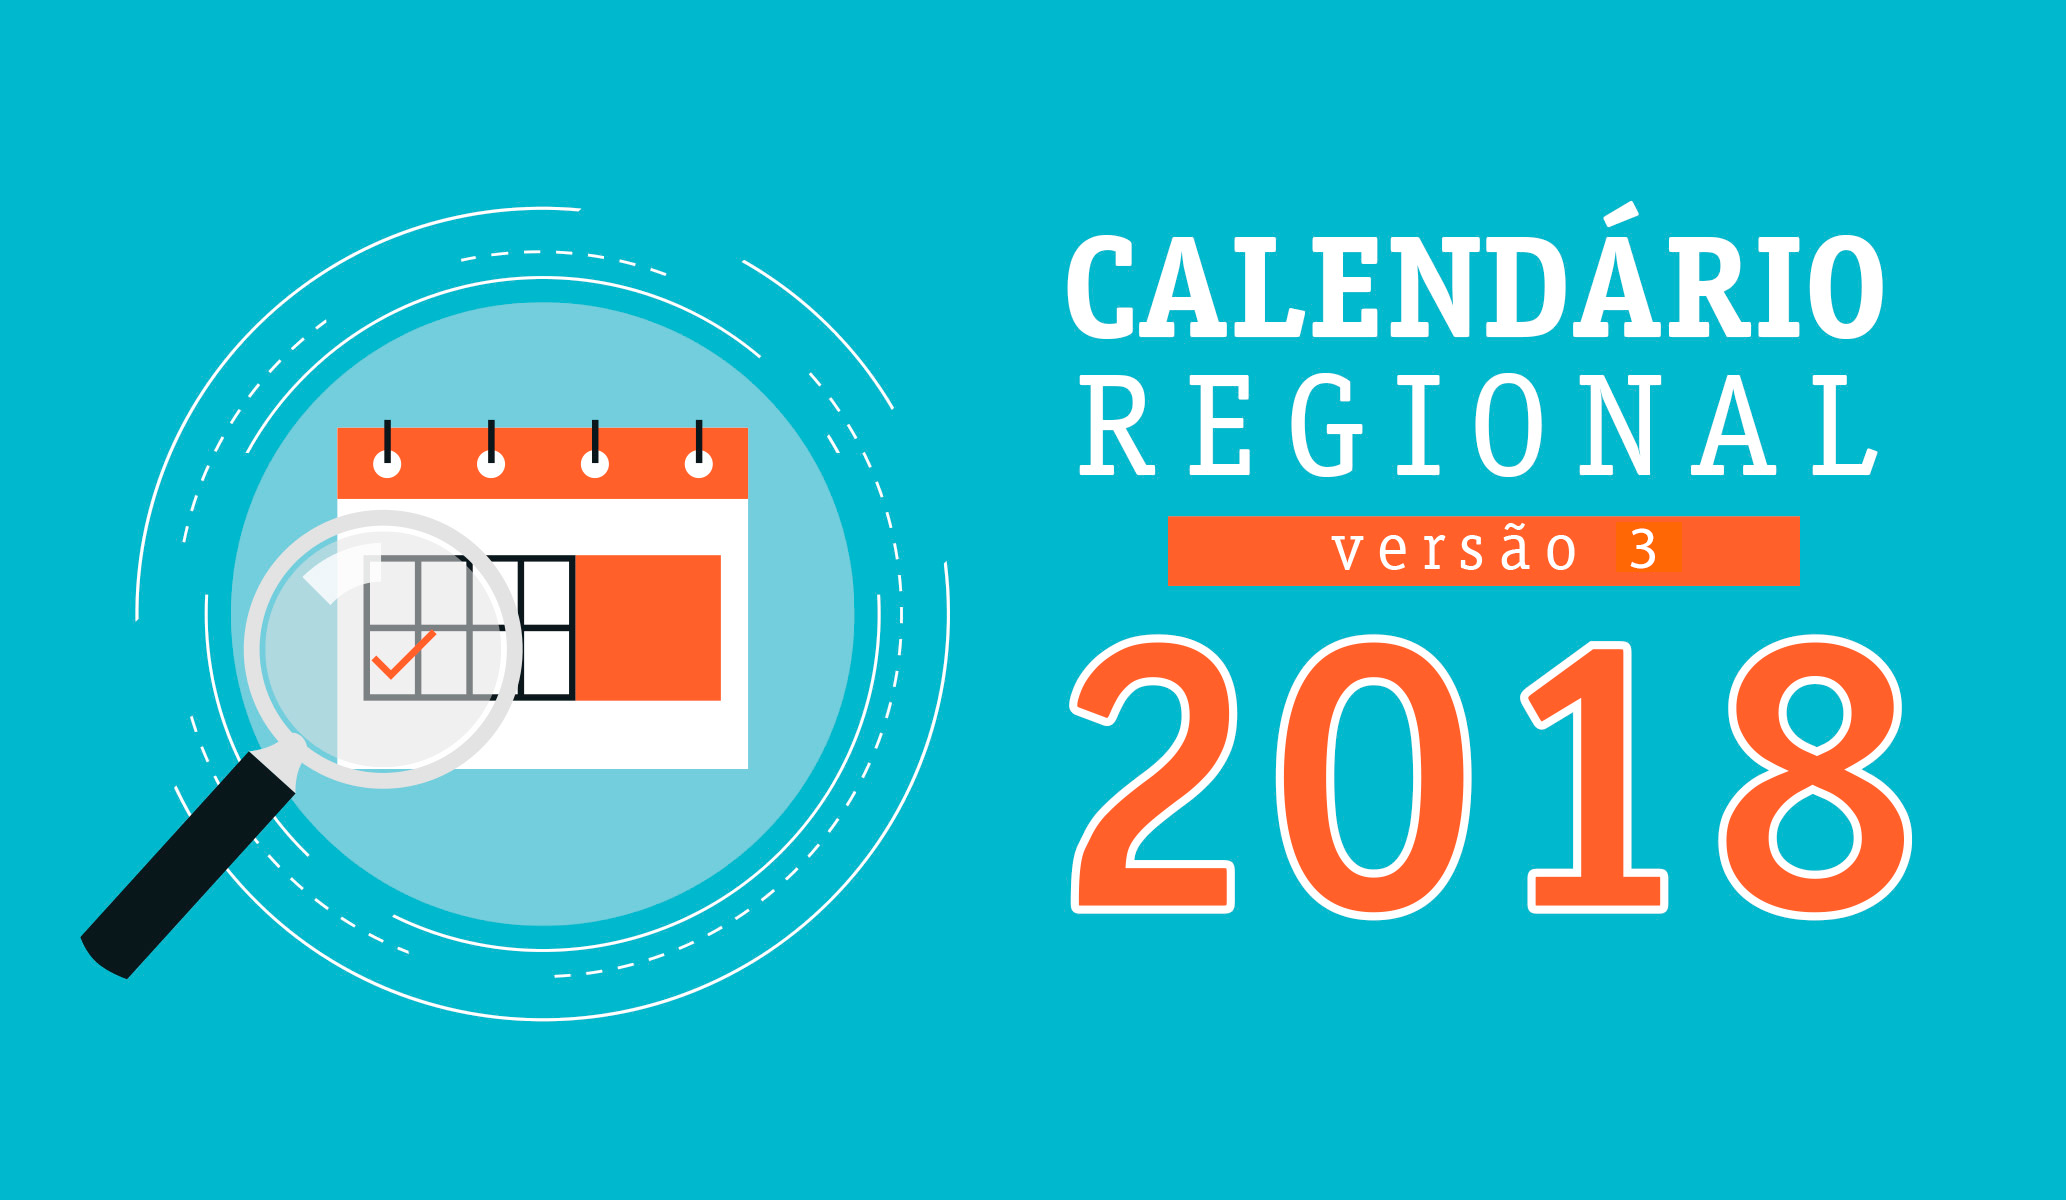 Versão 3 do Calendário Regional 2018